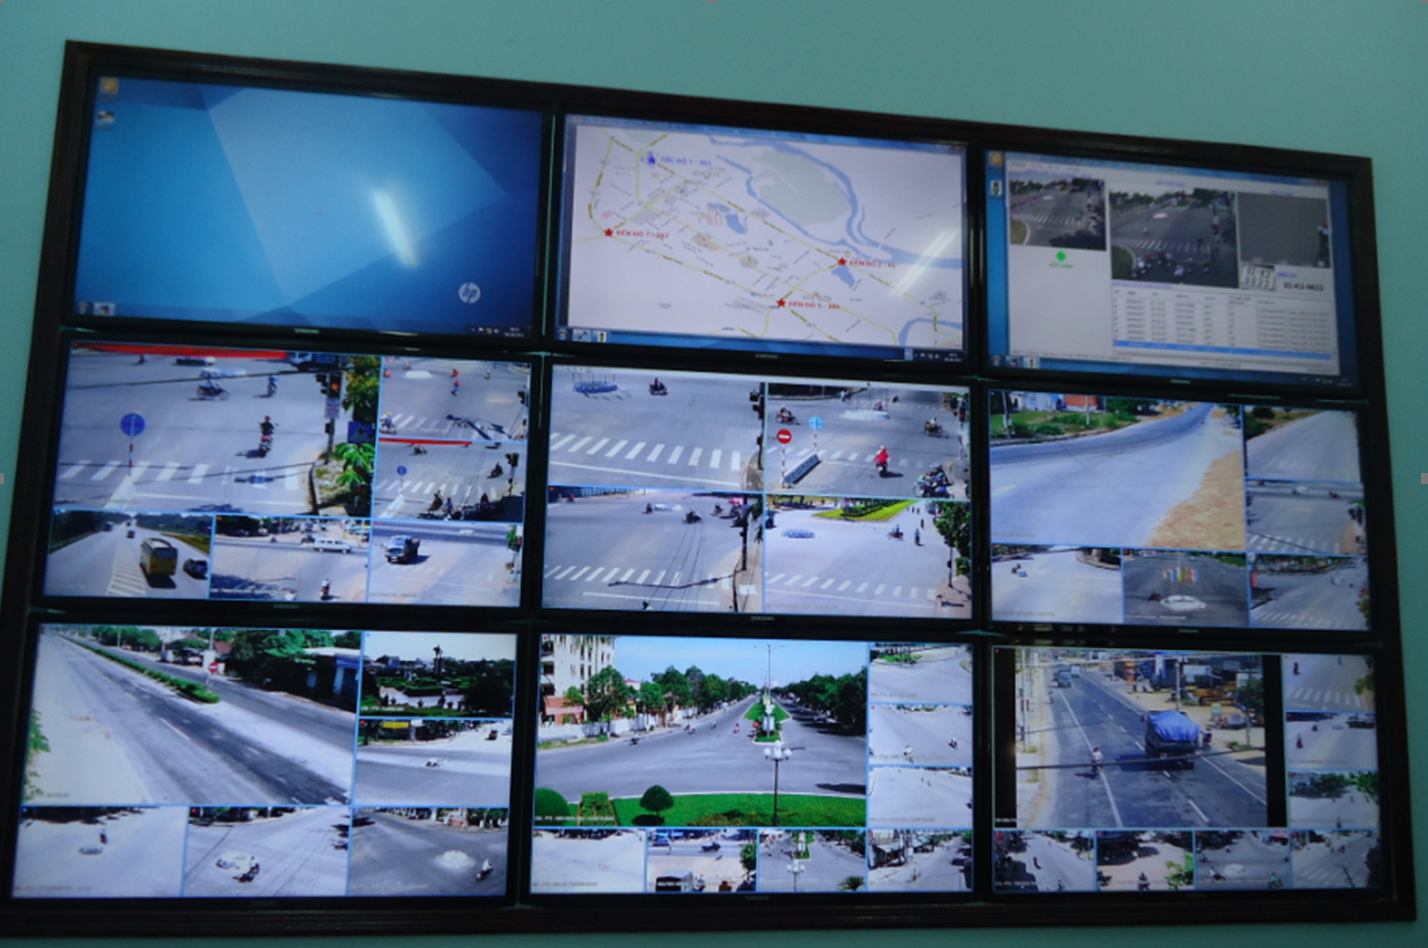 Mua sắm thiết bị, lắp đặt và hướng dẫn sử dụng hệ thống Camera giám sát an ninh công cộng tại thành phố Tam Kỳ